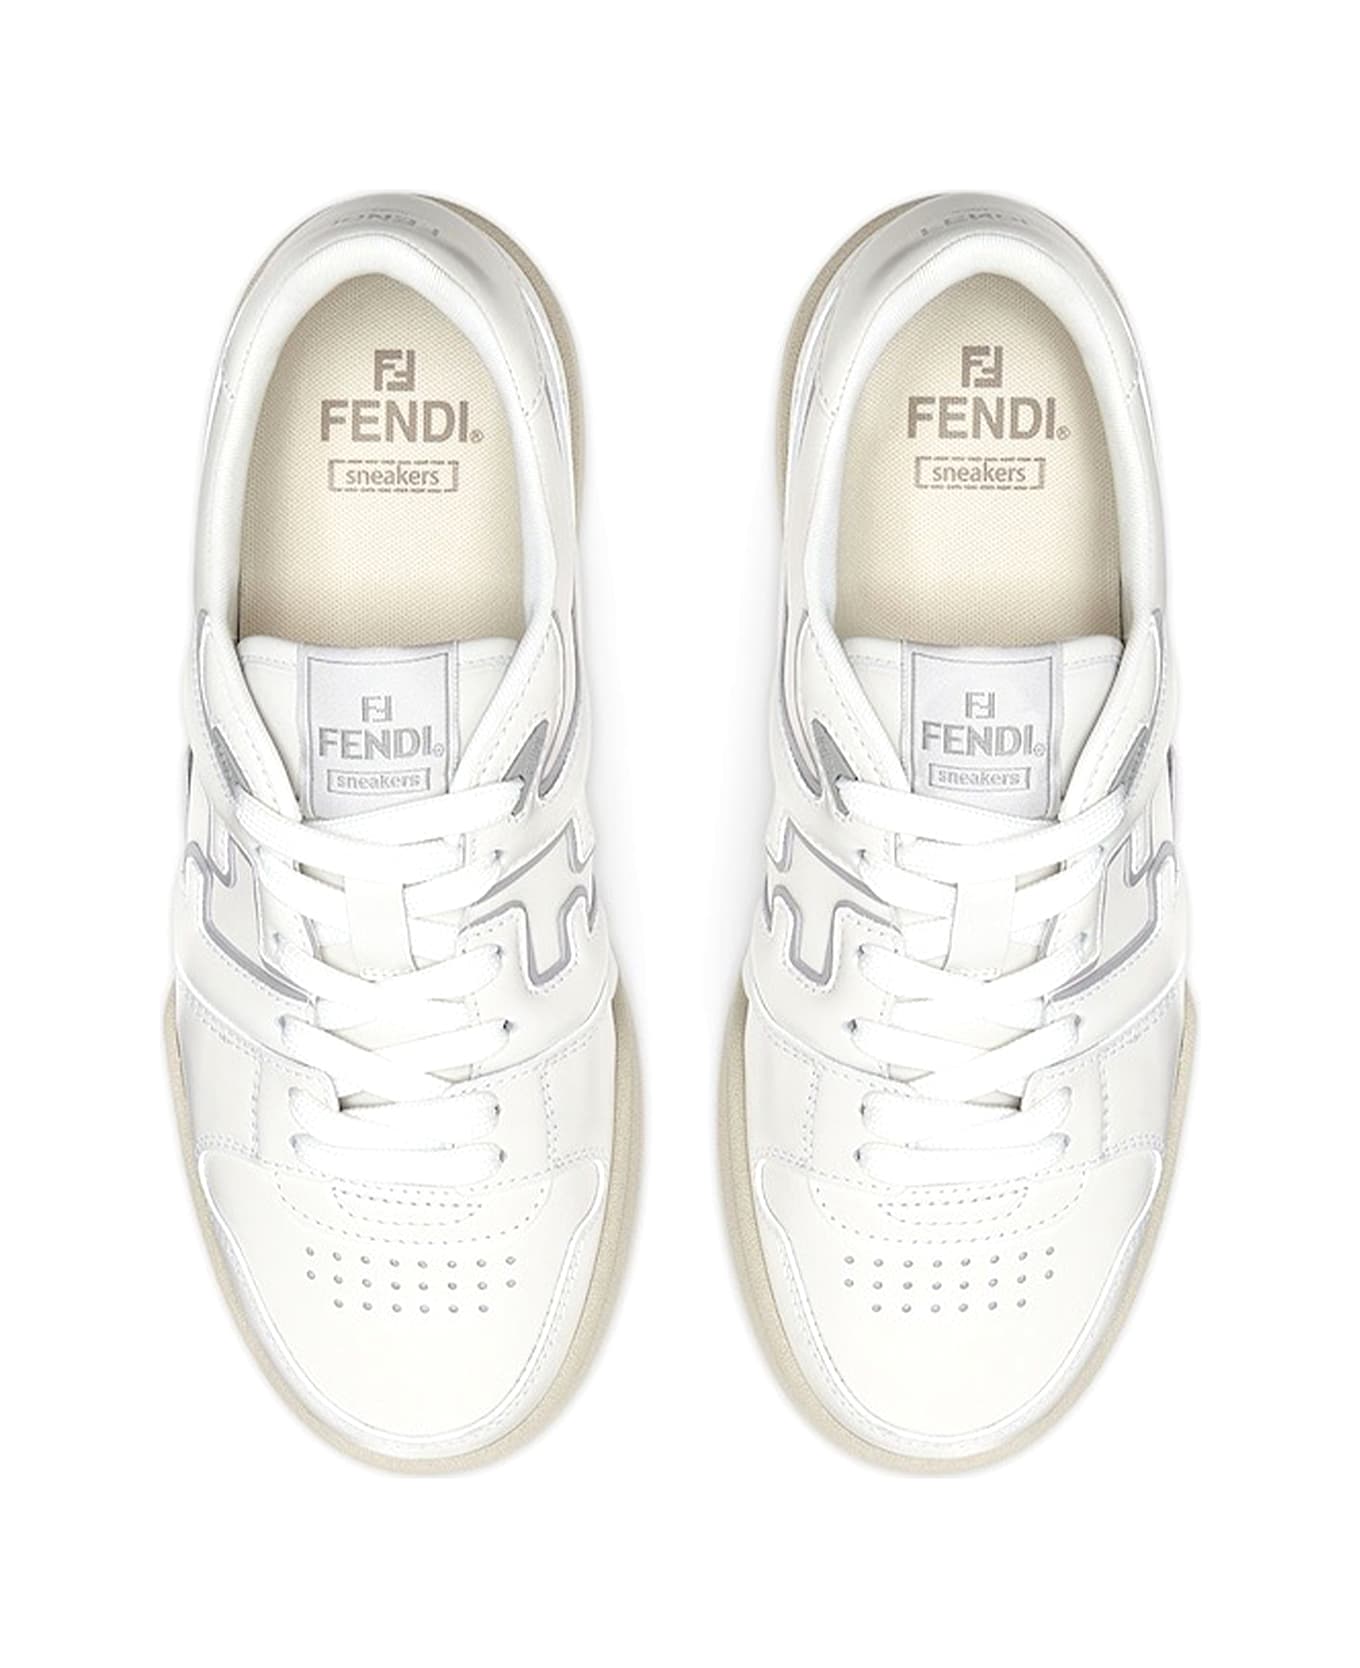 Fendi Low Top Sneaker In White Leather - BIANCO GRGIO CHIARO